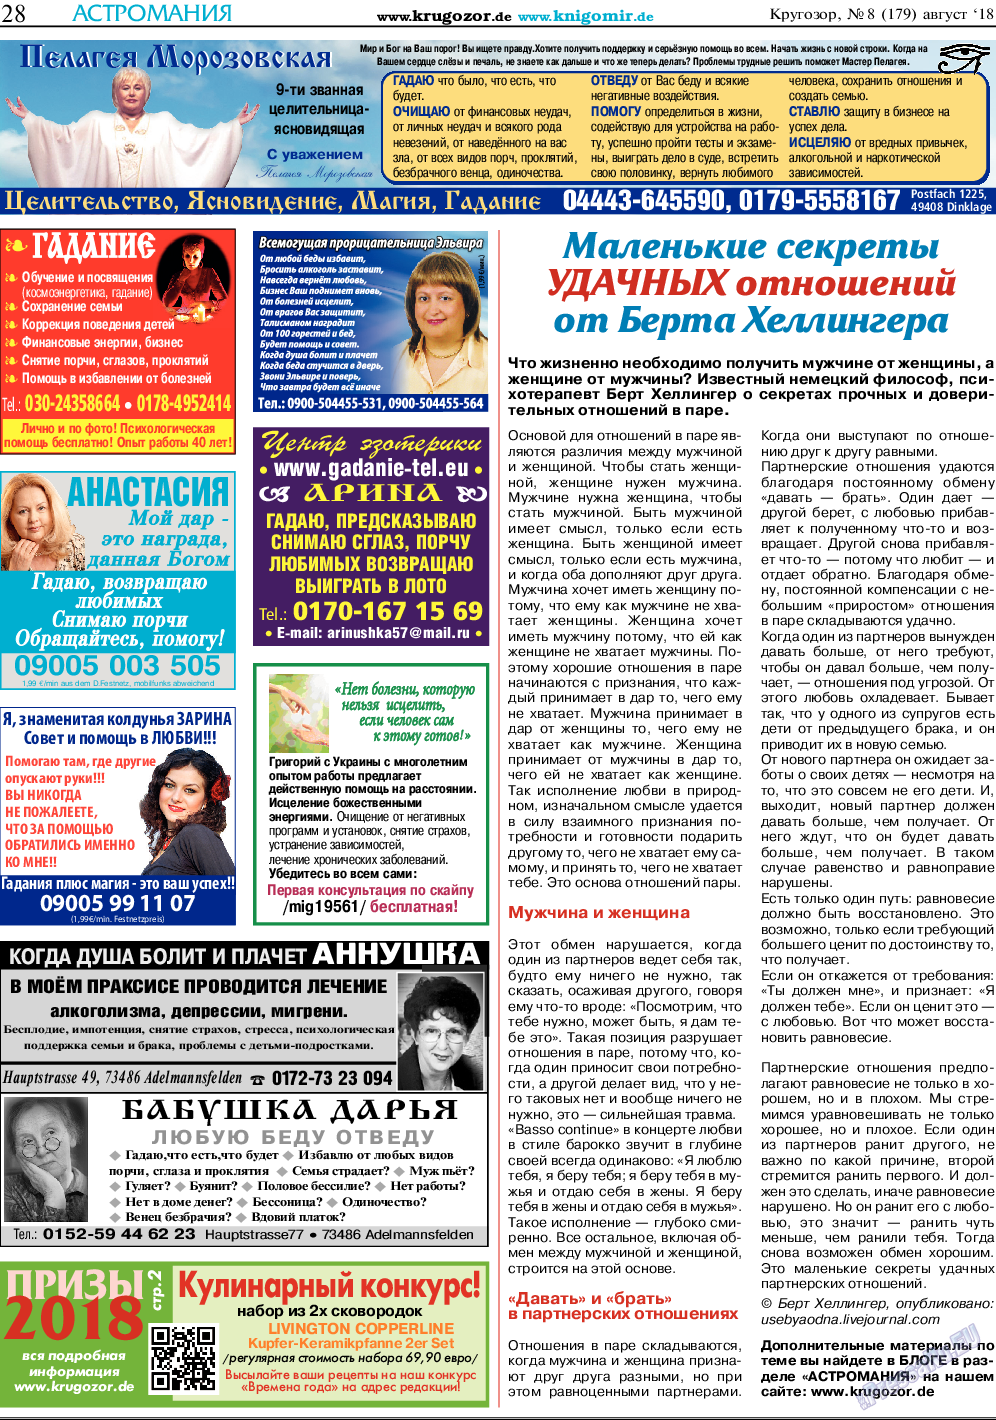 Кругозор, газета. 2018 №8 стр.28